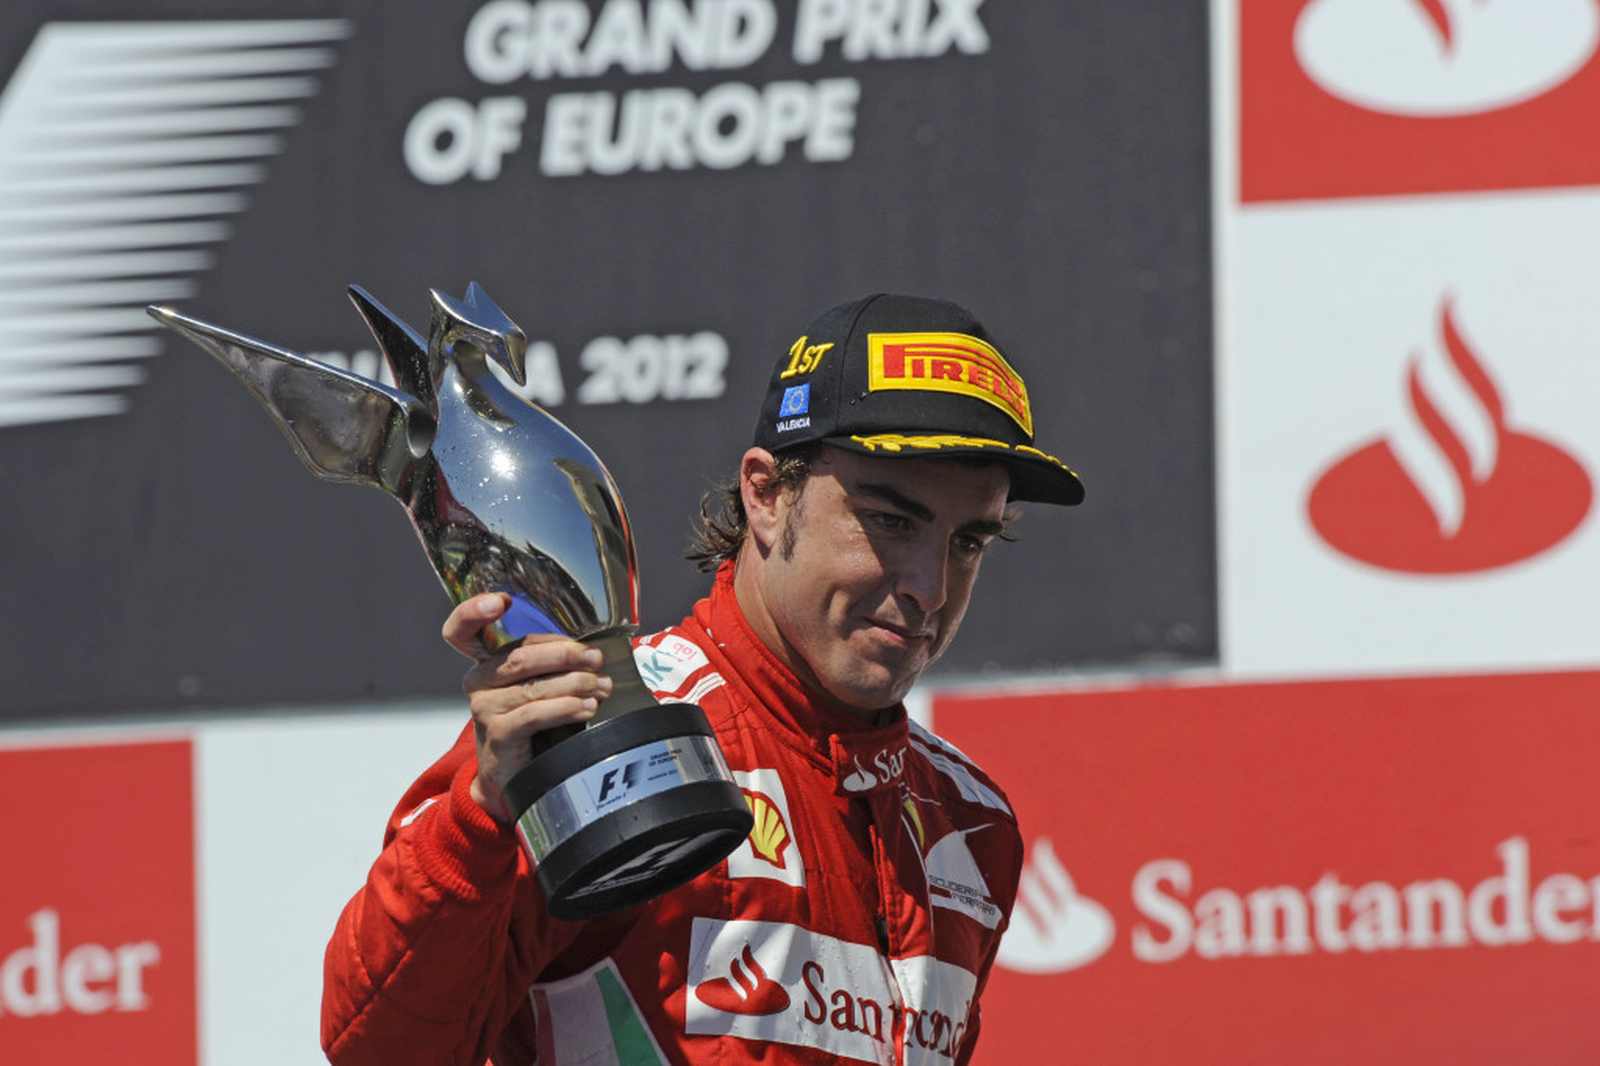 7º lugar: Fernando Alonso (ESP) - 32 vitórias, (ainda está em atividade).